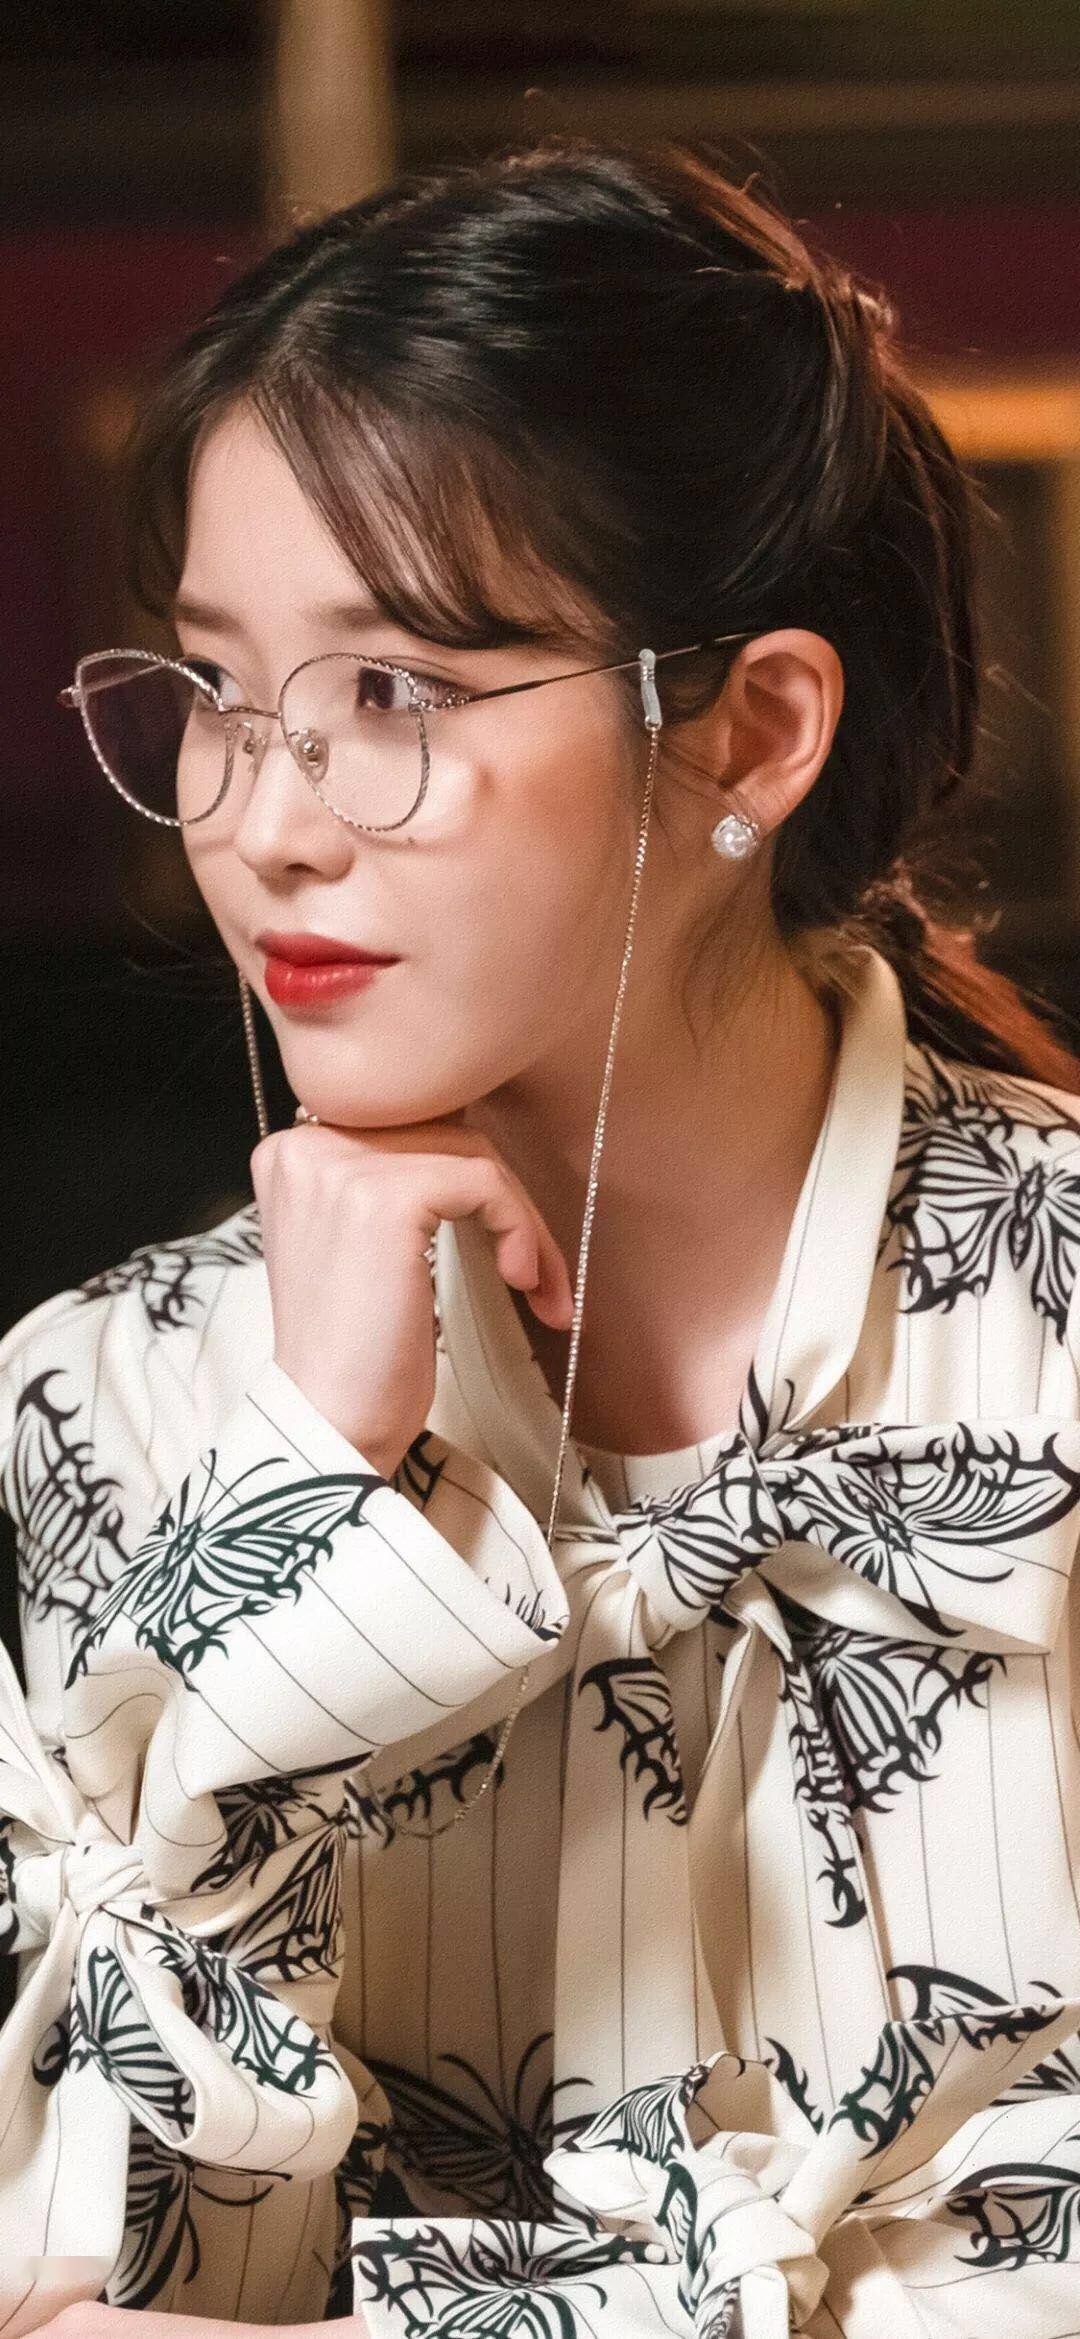 iu获最适合戴眼镜的女艺人投票榜单第二位